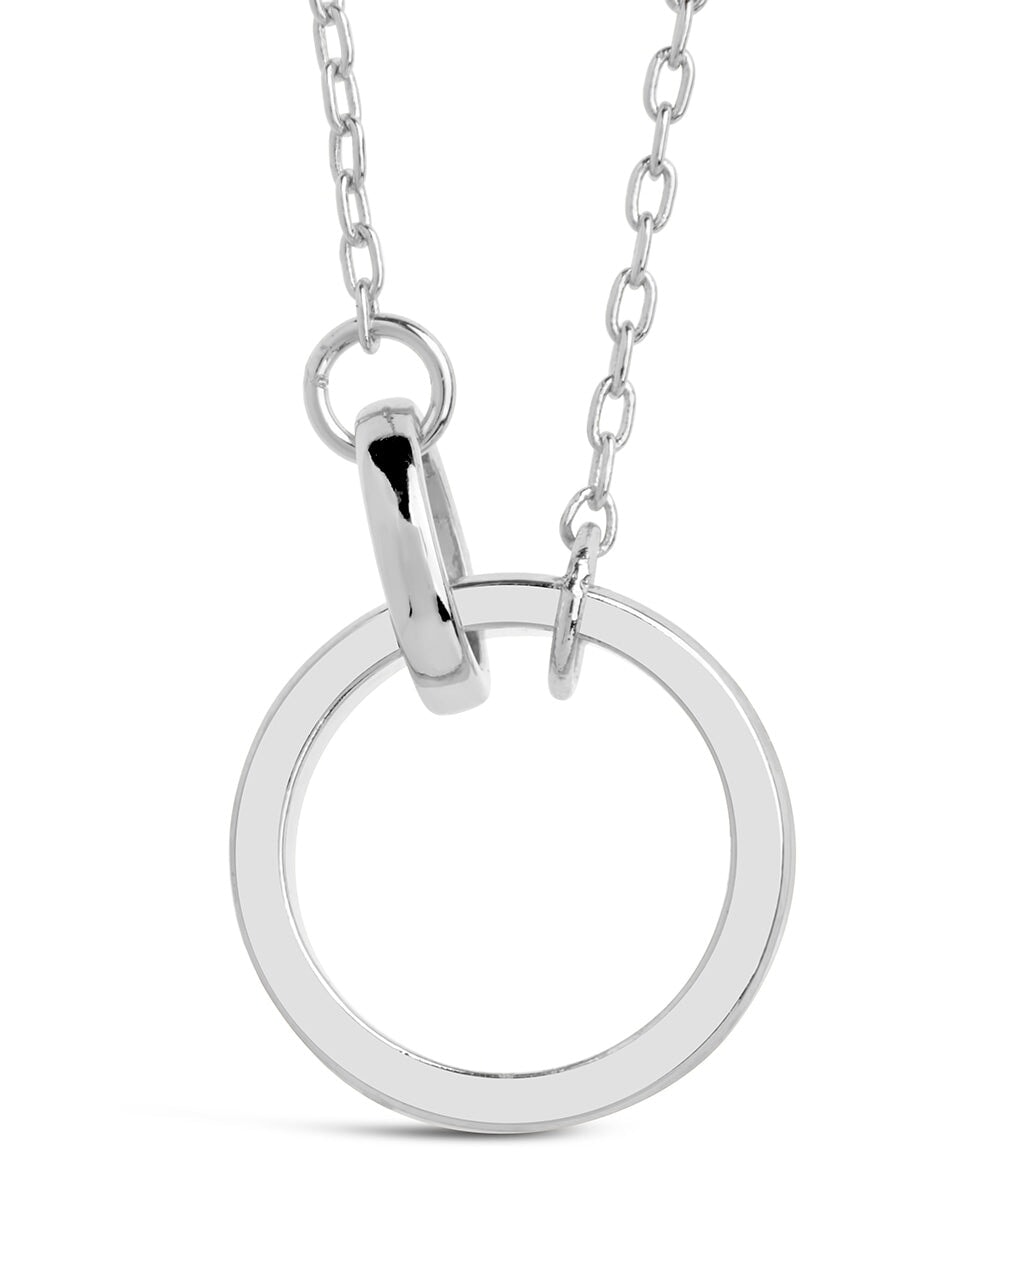 Mishel Interlocking Necklace Necklace Sterling Forever Silver 